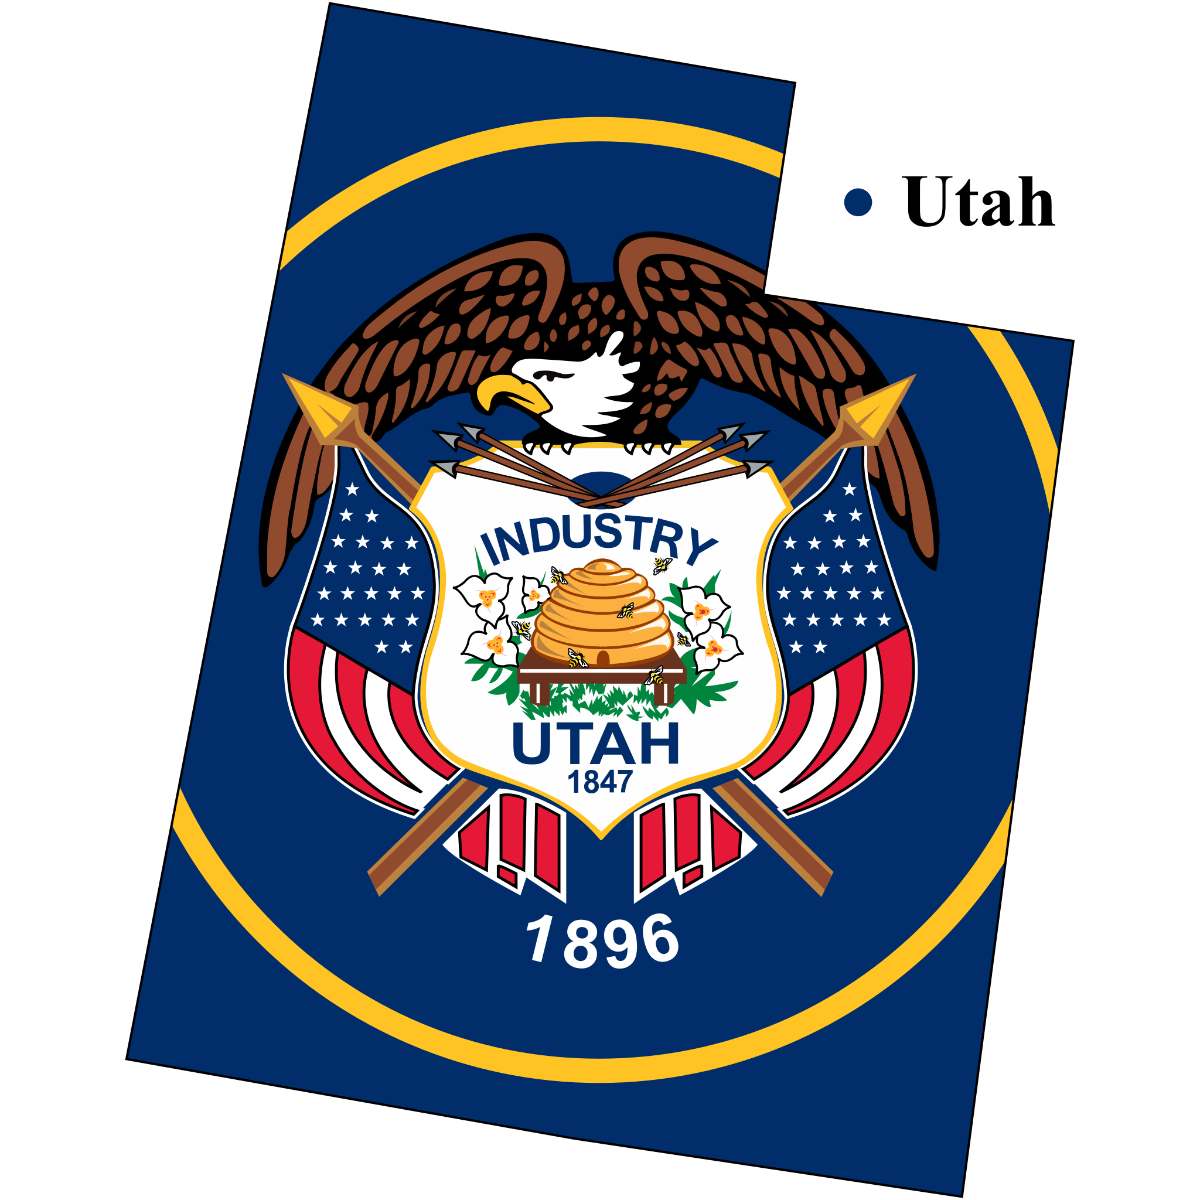 Utah State map cutout with Utah flag superimposed